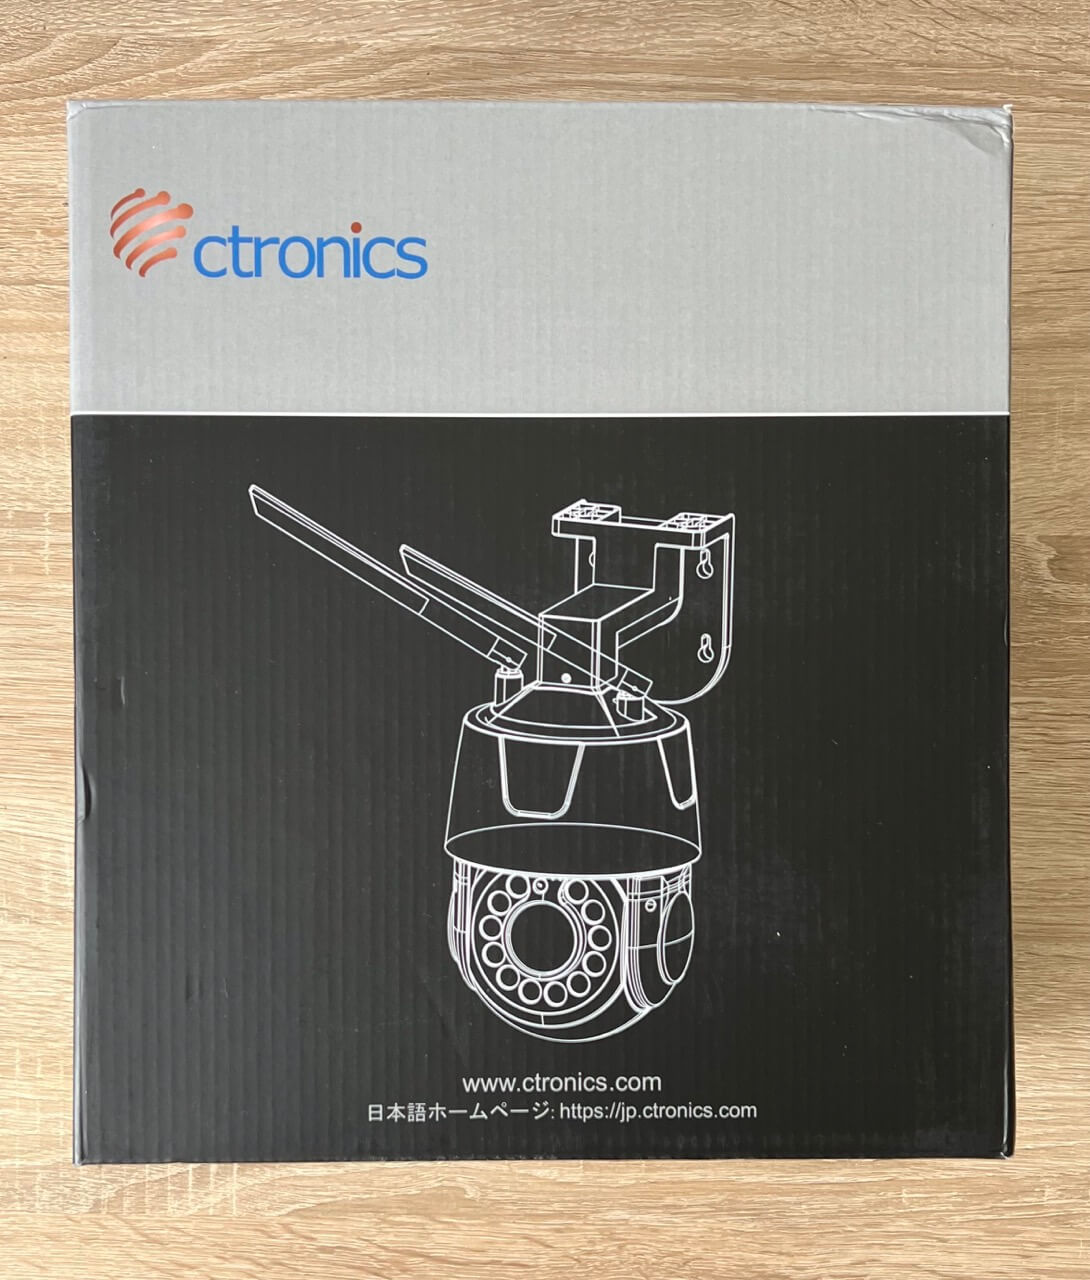 Emballage de la caméra Ctronics CTIPC-550C-B